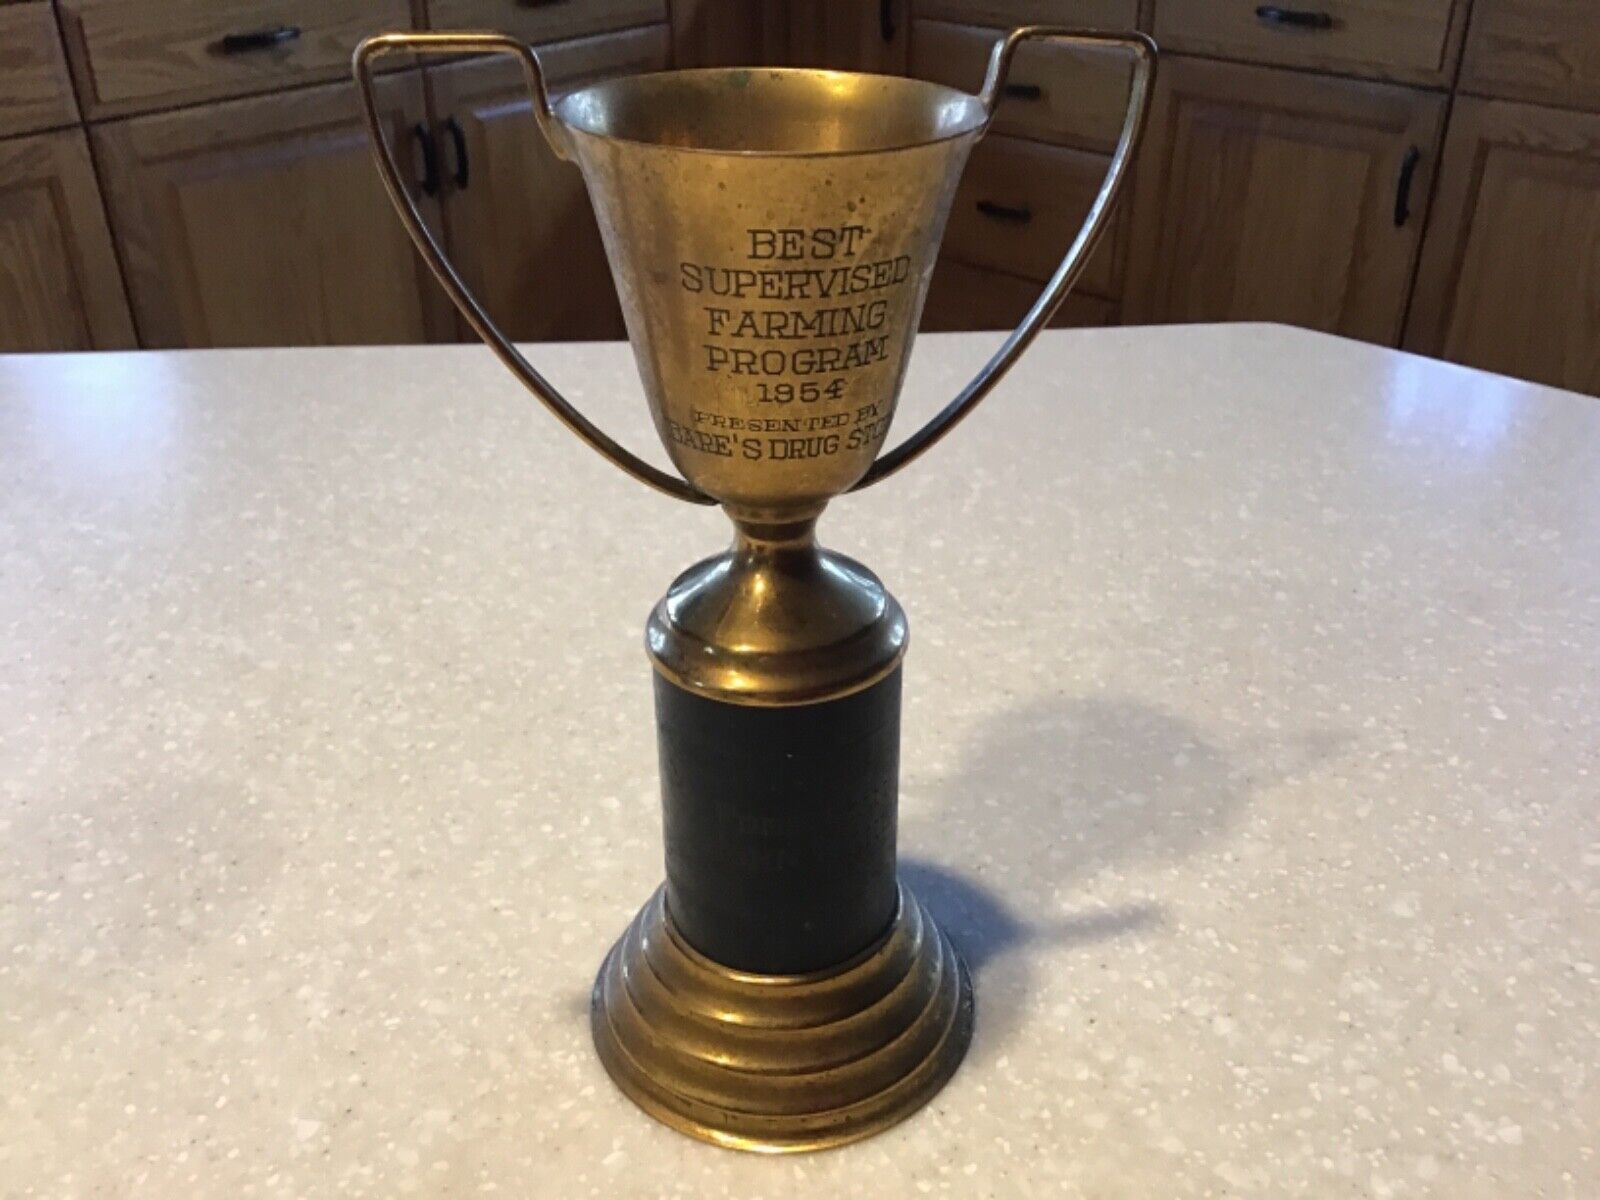 Vintage 1954 Trophy “Best Supervised Farming Program” Bare’s Drug Store 